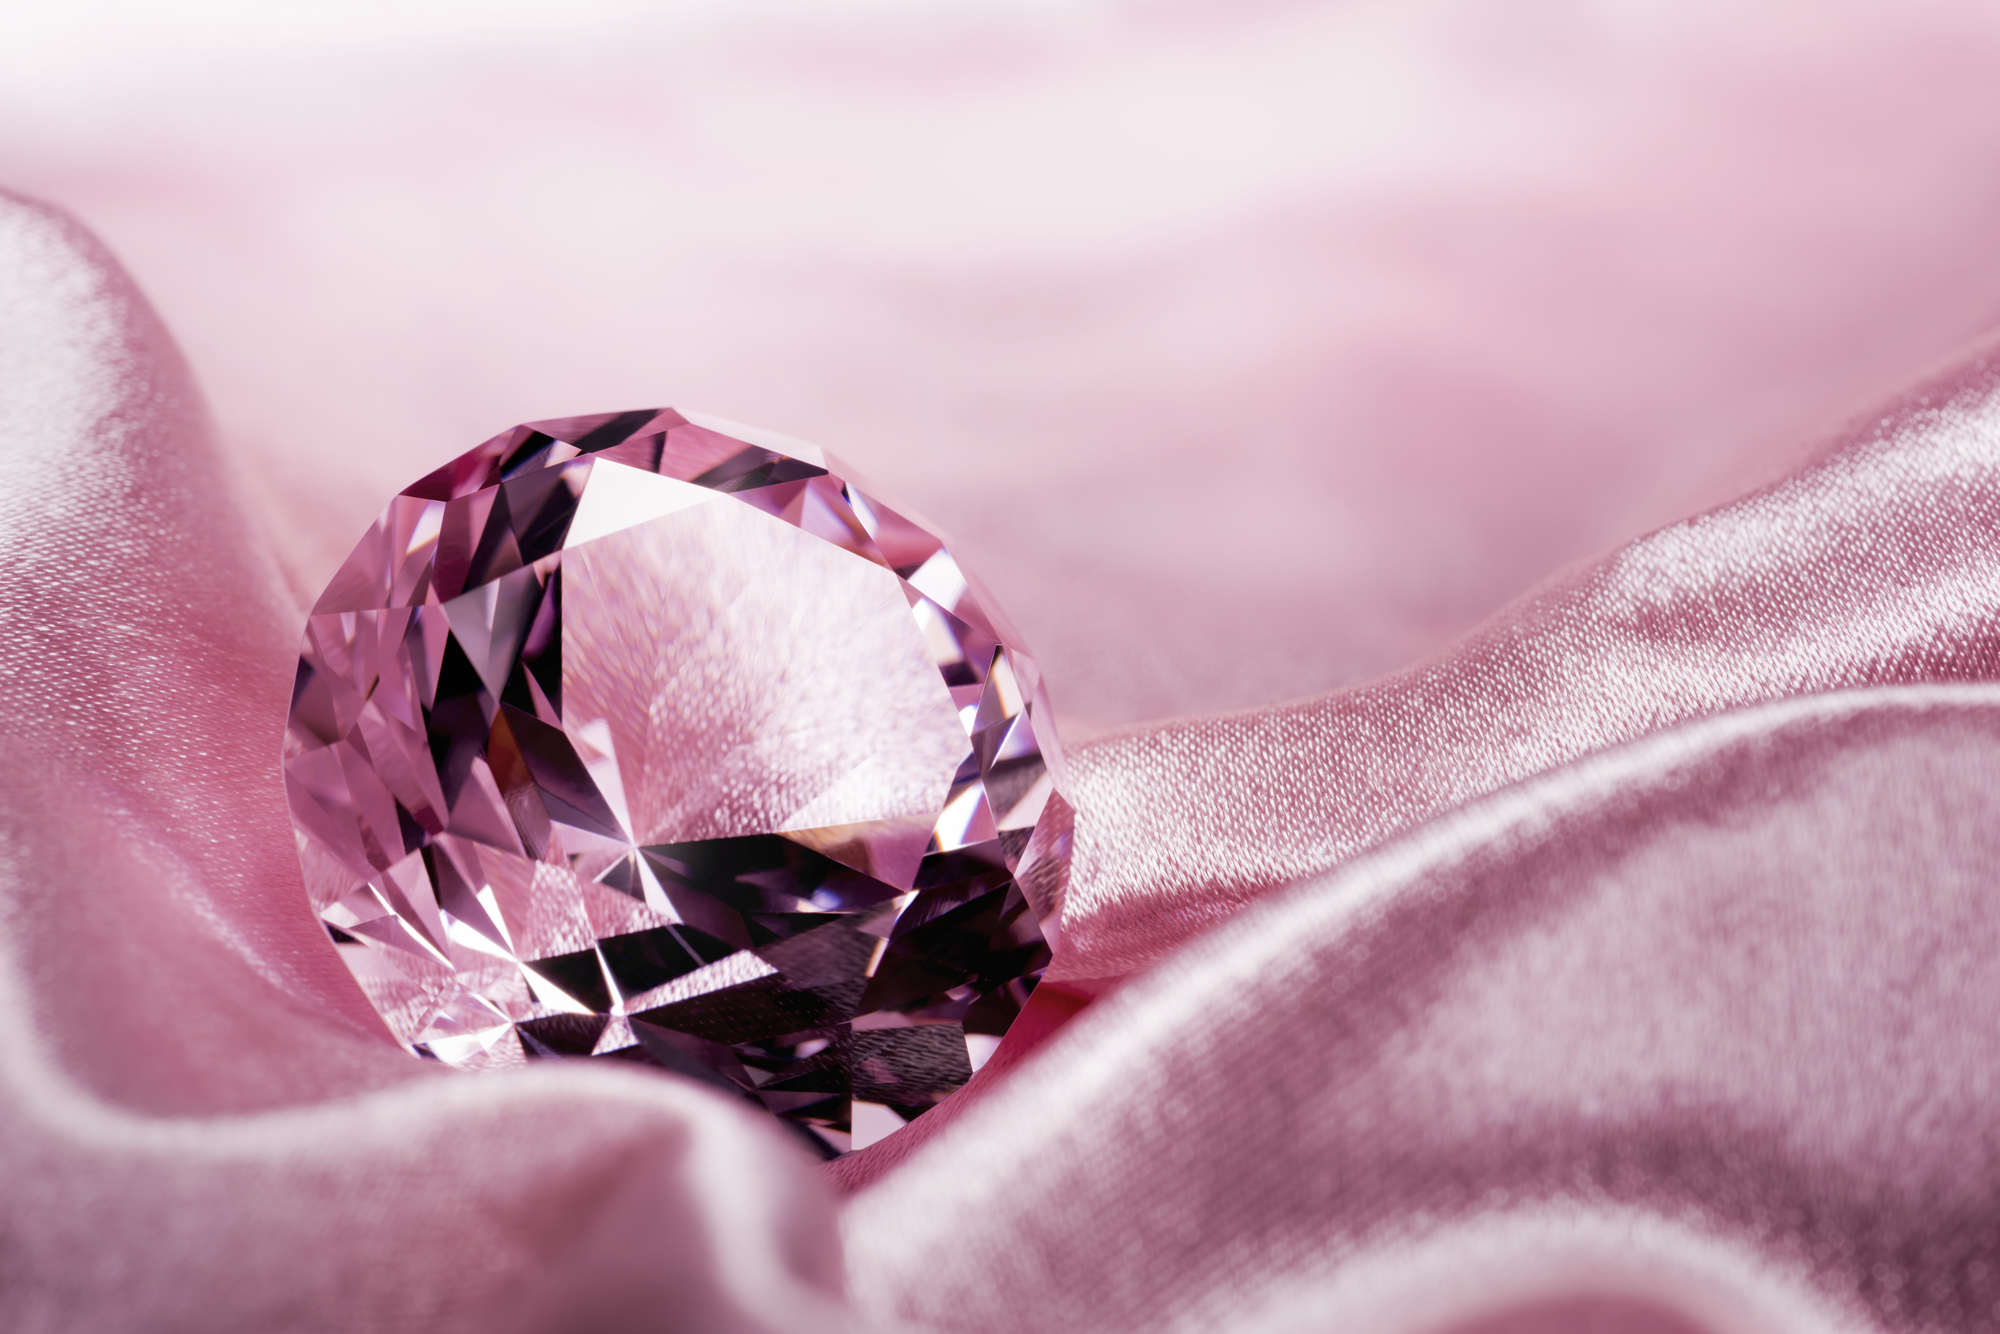 価値が高いといわれているピンクダイヤモンド。その理由をご存じでしょうか？この記事では、ピンクダイヤモンドの価値が高い理由と併せて、価値が高くなりやすいピンクダイヤモンドの特徴もご紹介しています。資産保全用として保有を検討している方は、ぜひご参考にしてください。